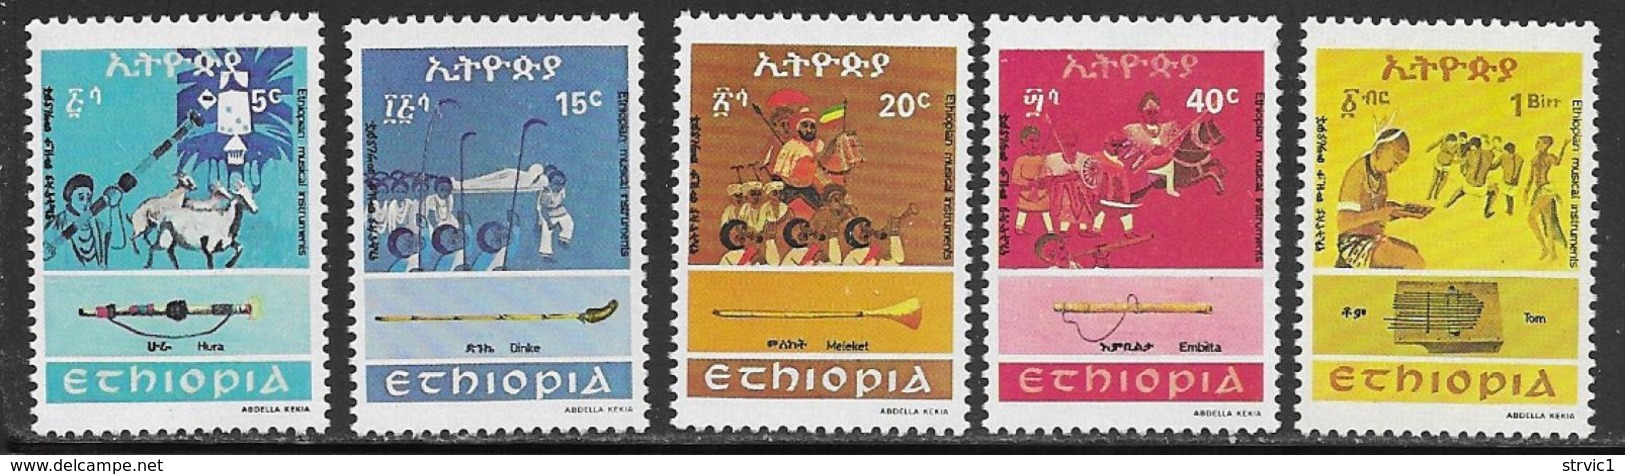 Ethiopia Scott # 1075-9 MNH Musical Instruments, 1983 - Ethiopia